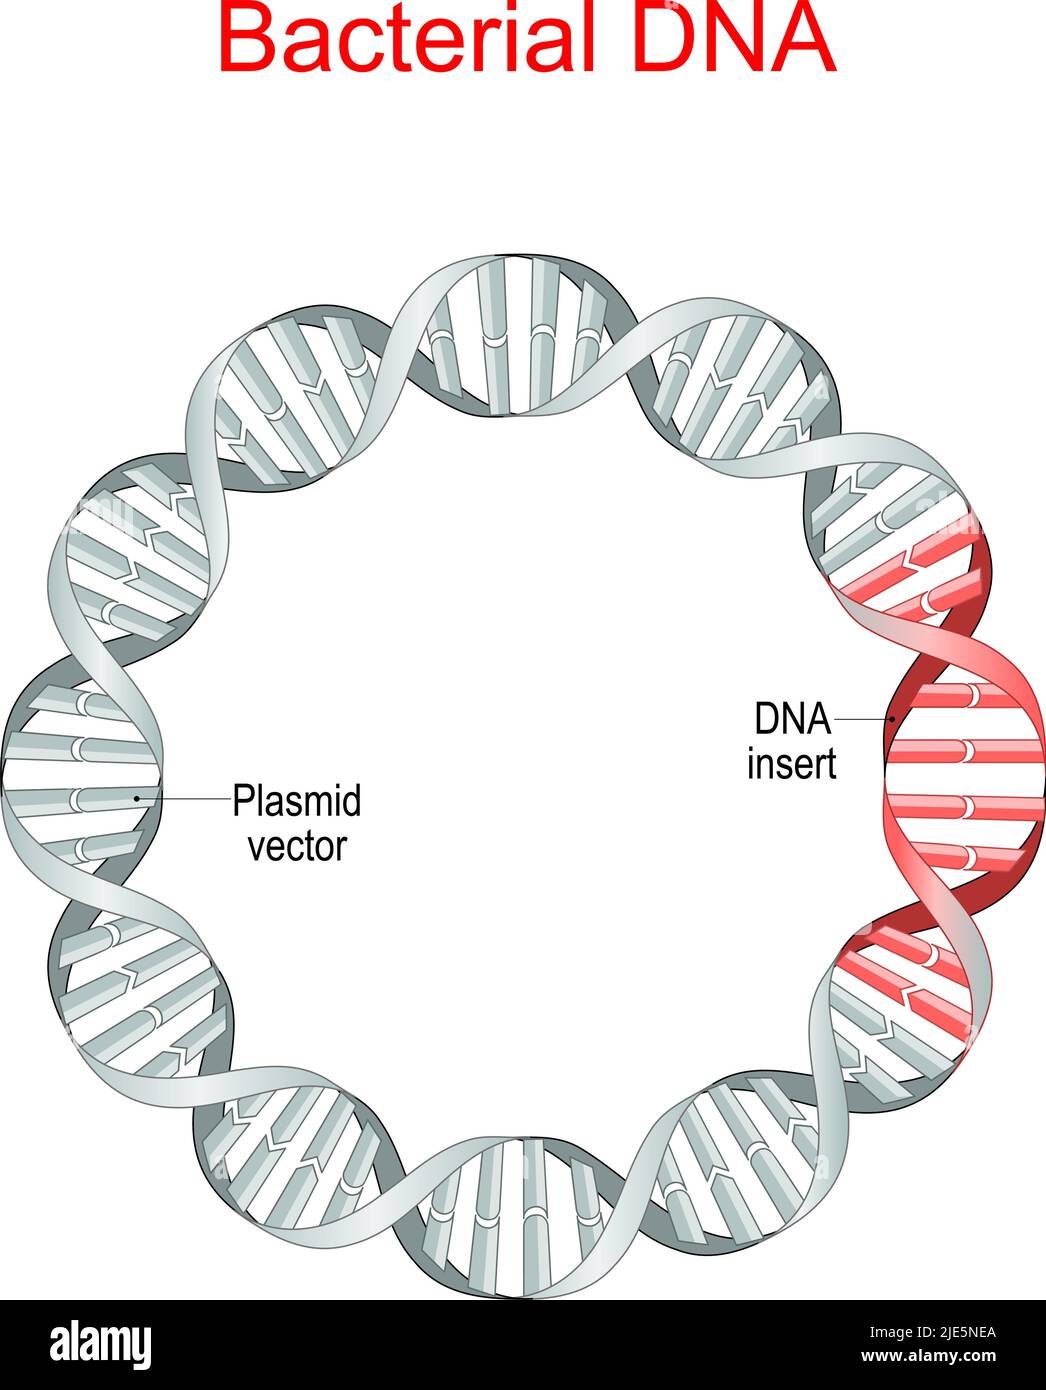 ADN bactérien. Plasmide est une petite molécule d'ADN extrachromosomique. Vecteur plasmidique, insertion de séquences d'ADN recombinantes. Génie génétique. Antibiotique Illustration de Vecteur